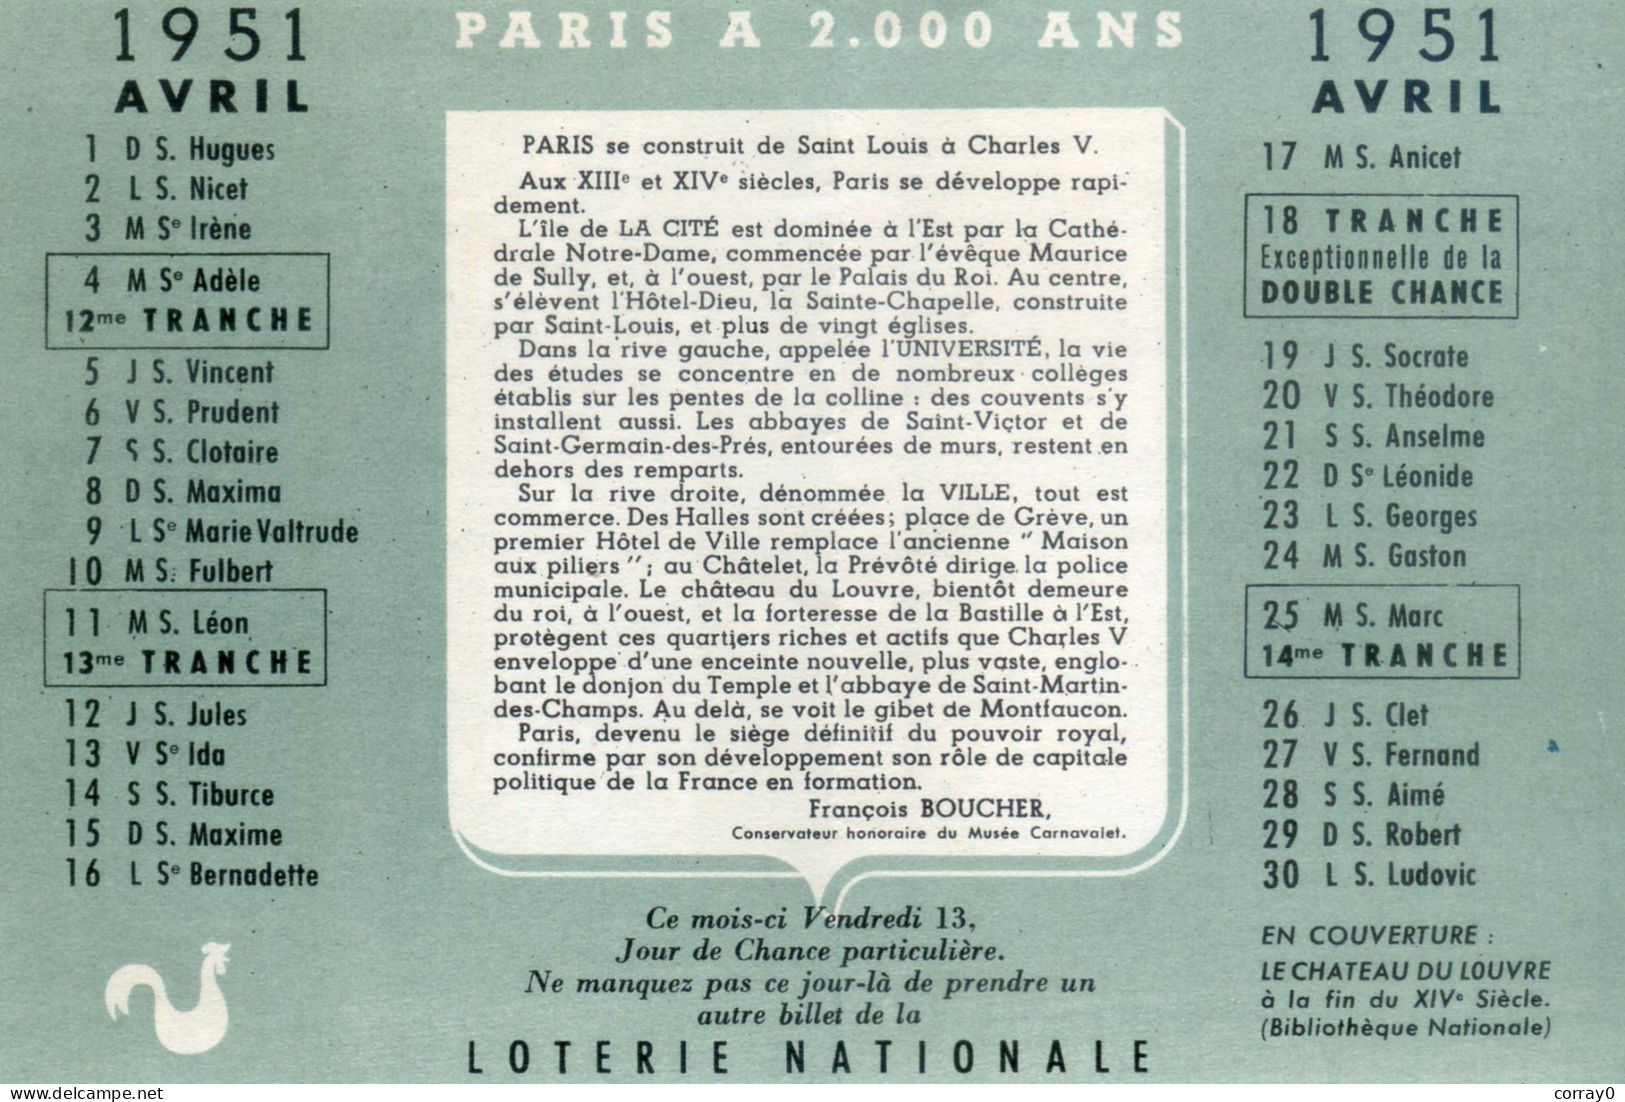 LOTERIE NATIONALE. Calendrier Avril 1951 - Biglietti Della Lotteria